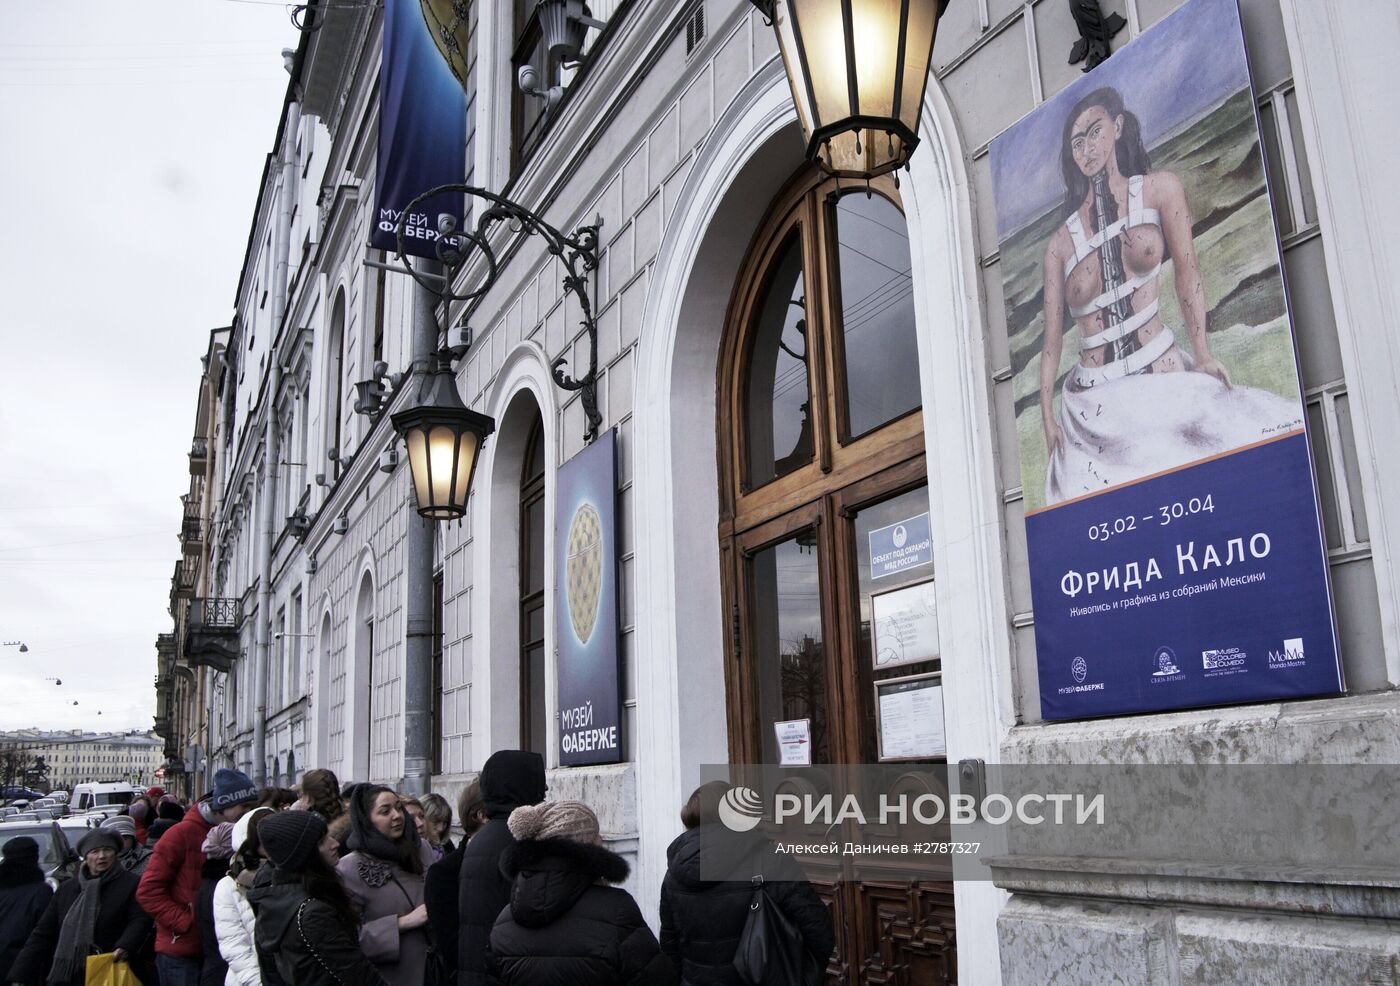 Очередь на выставку Фриды Кало в Санкт-Петербурге